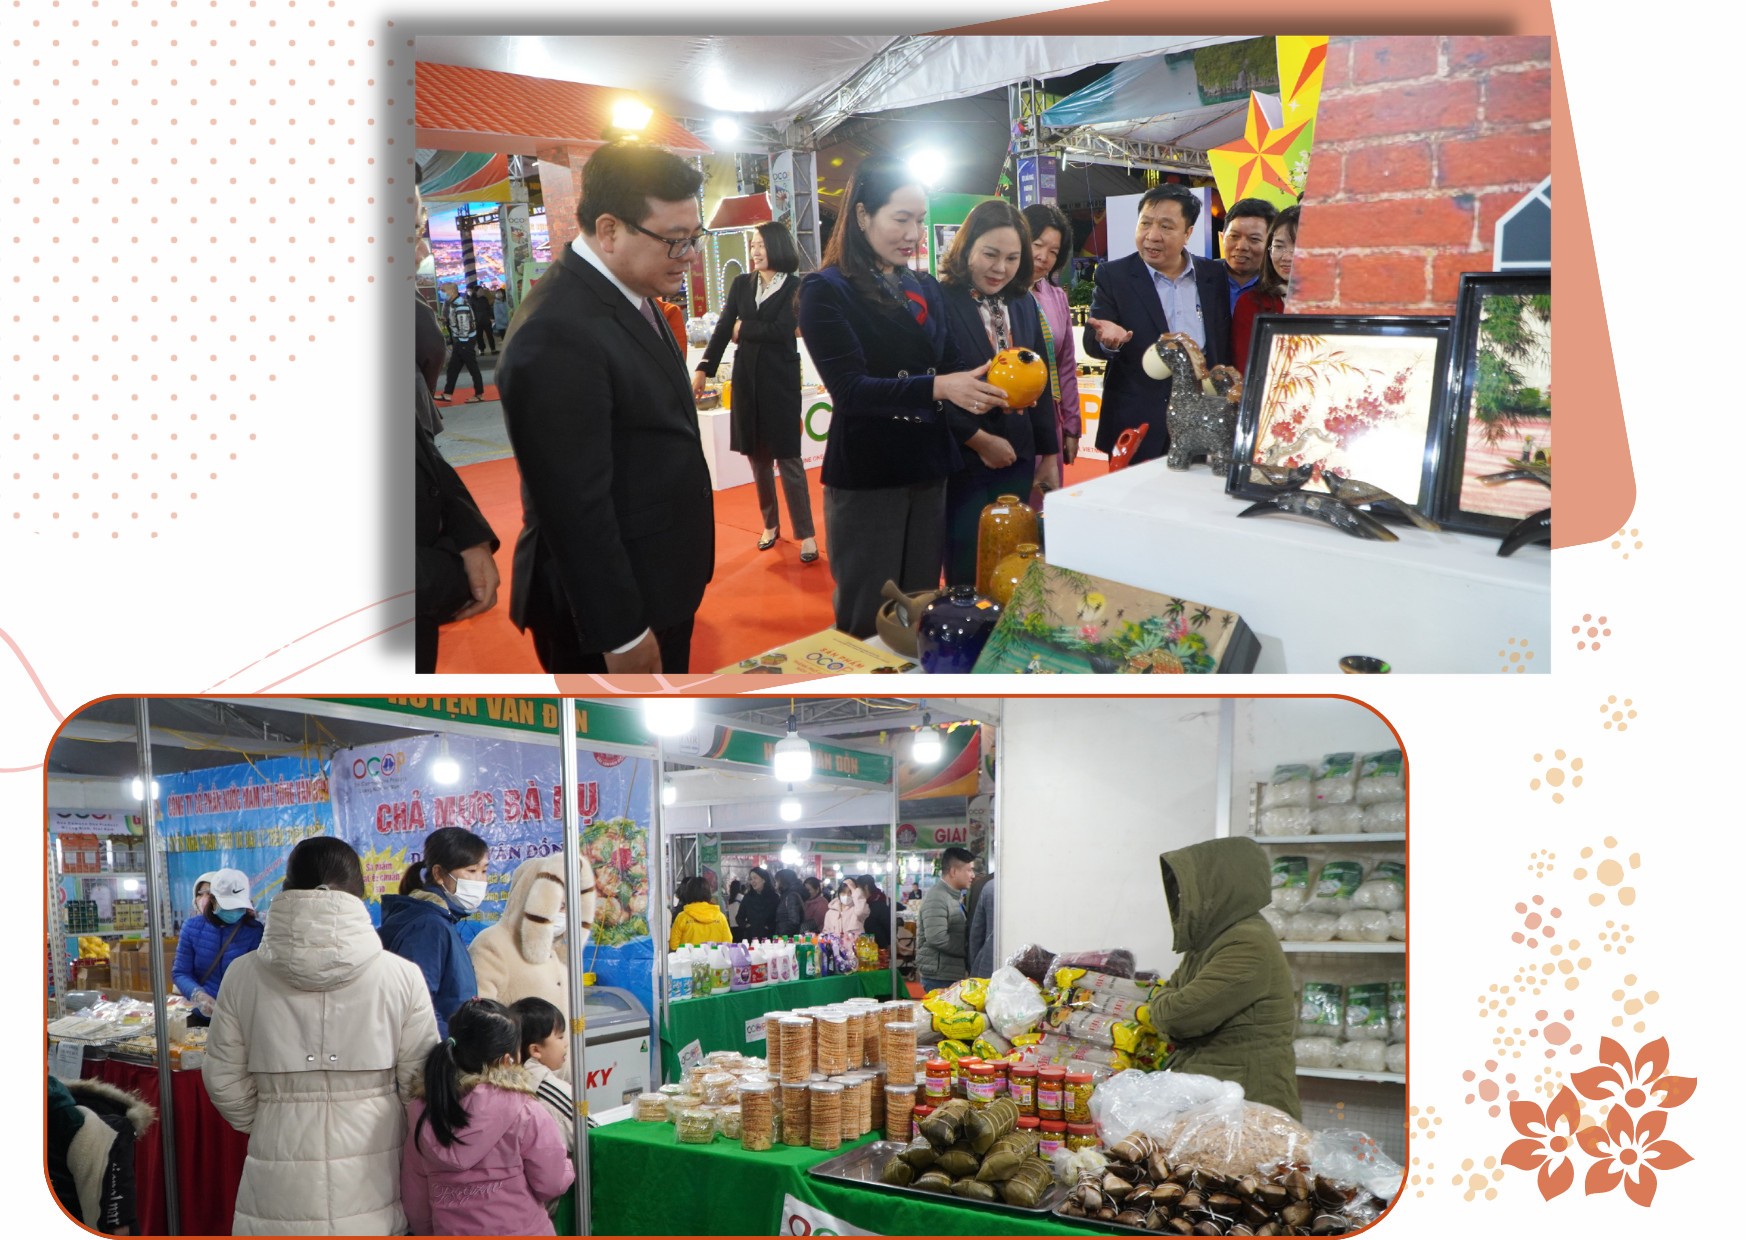 Longform | Quảng Ninh: Phát triển thị trường bền vững cho sản phẩm OCOP